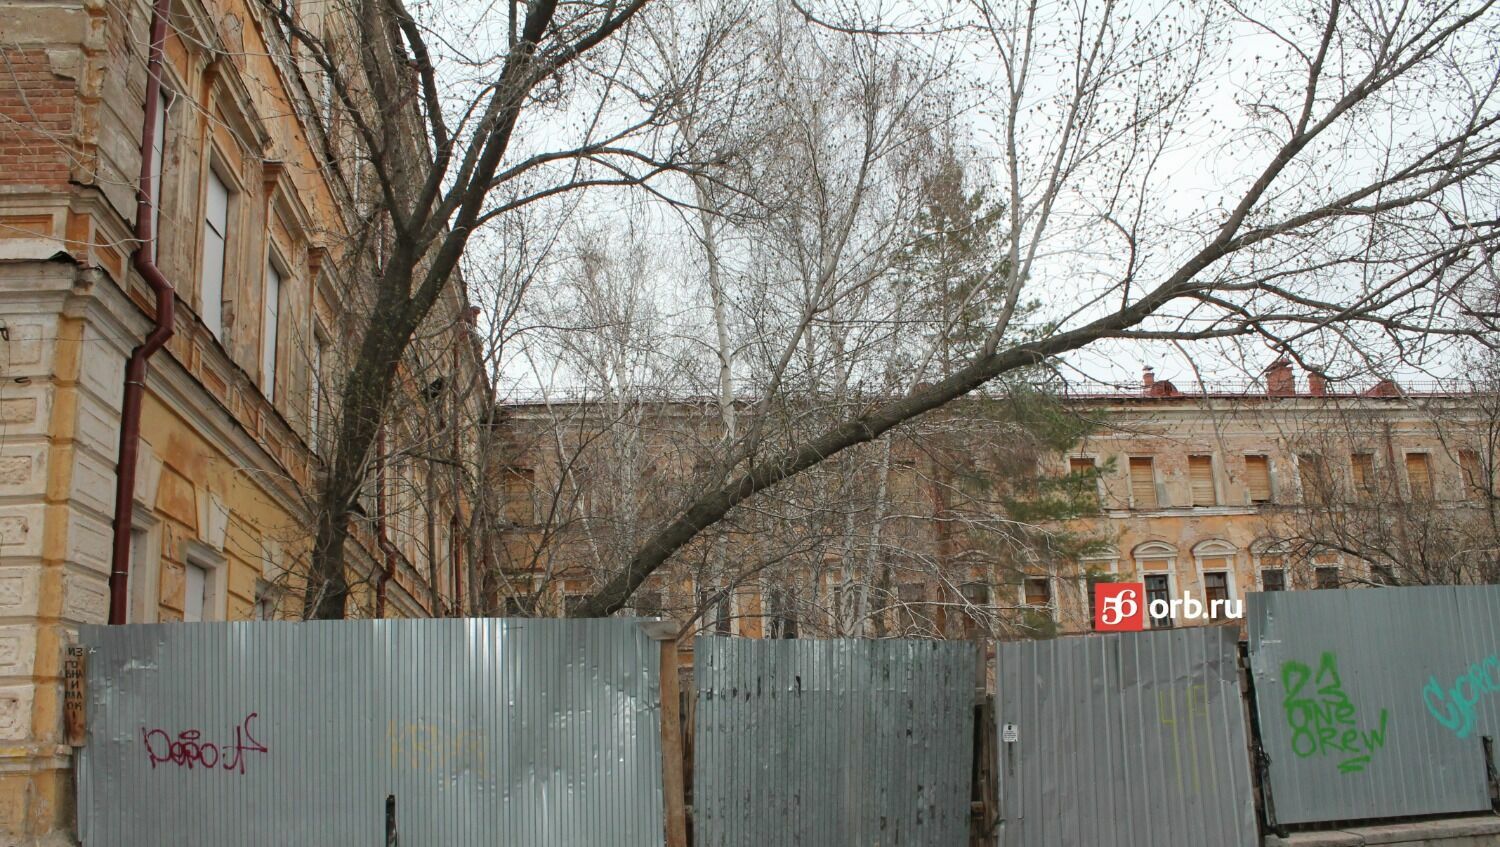 Здание бывшего летного училища на Советской,1